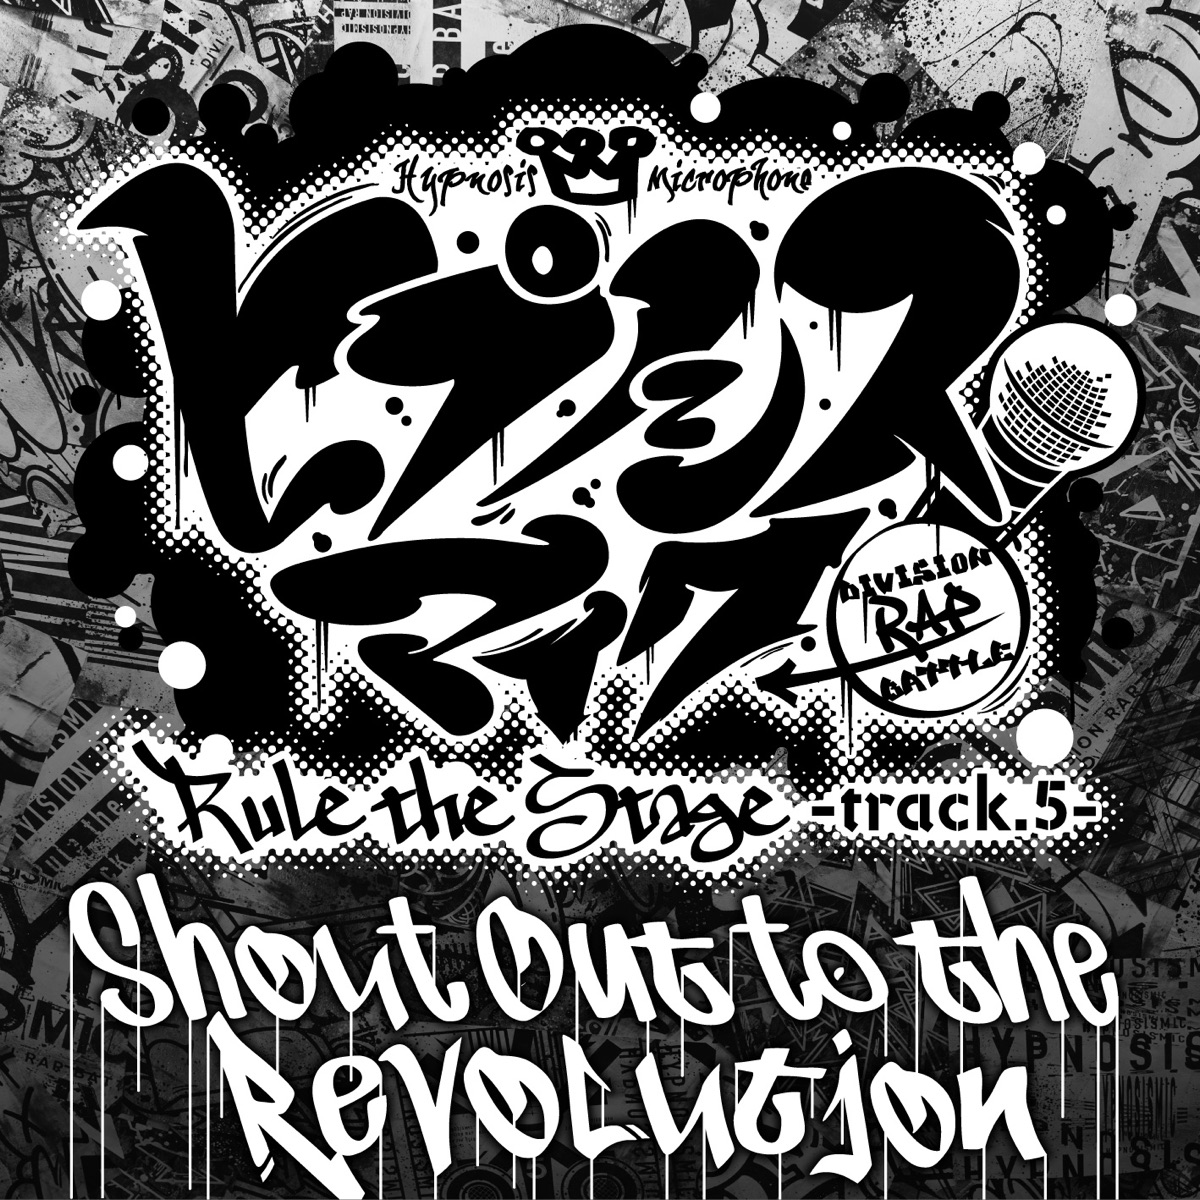 『ヒプノシスマイク -D.R.B- Rule the Stage (Track.5 All Cast) - Shout Out to the Revolution -Rule the Stage track.5- 歌詞』収録の『Shout Out to the Revolution -Rule the Stage track.5-』ジャケット